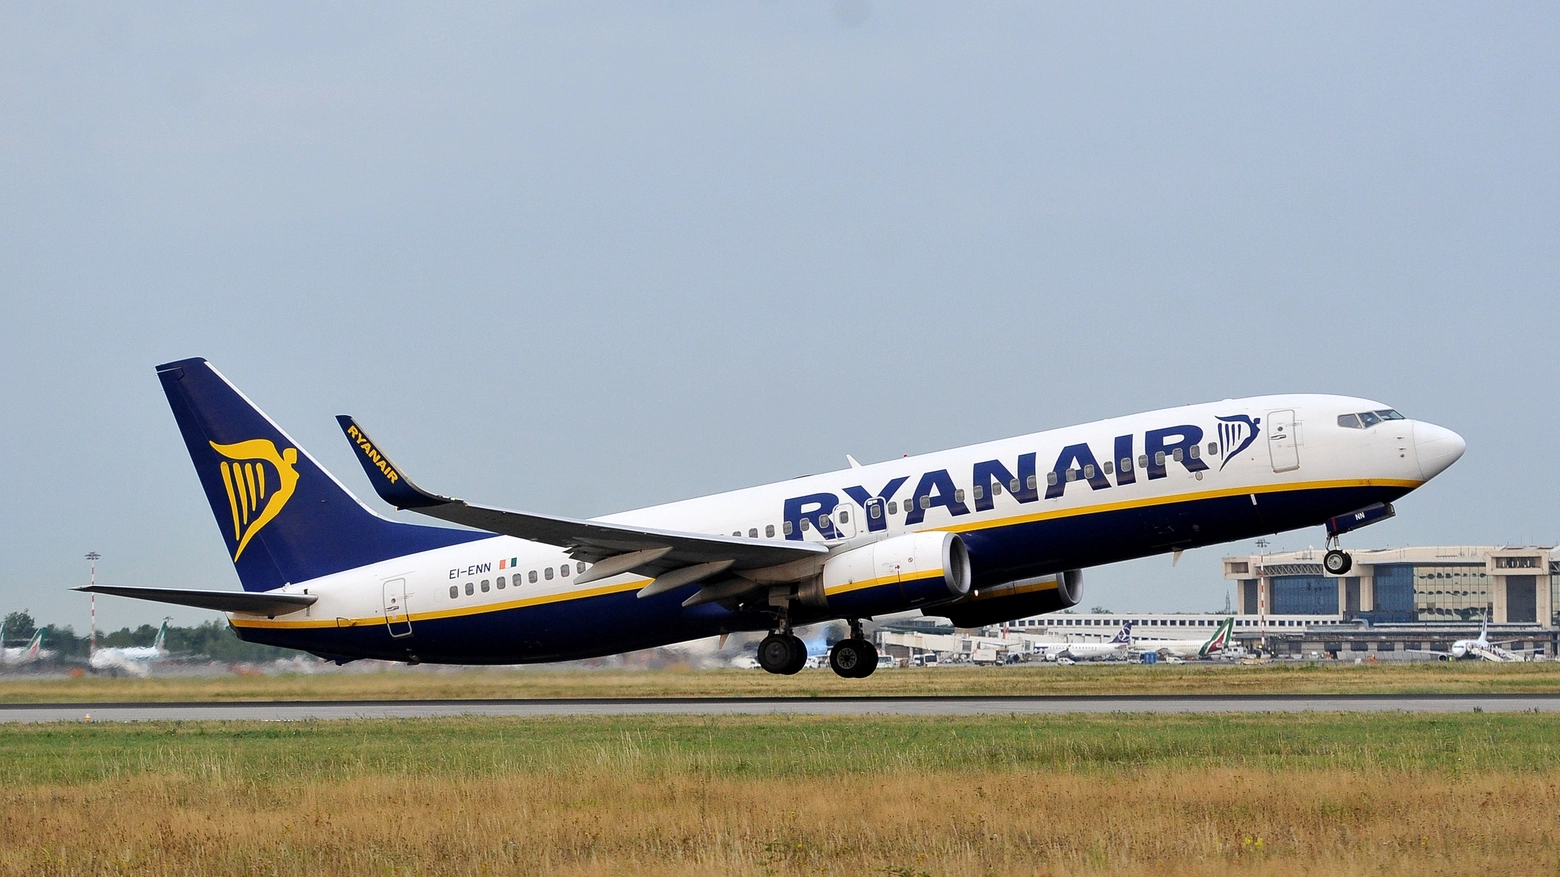 Voli Ryanair per Kutaisi, nuova rotta da Bologna (Foto Newpress)